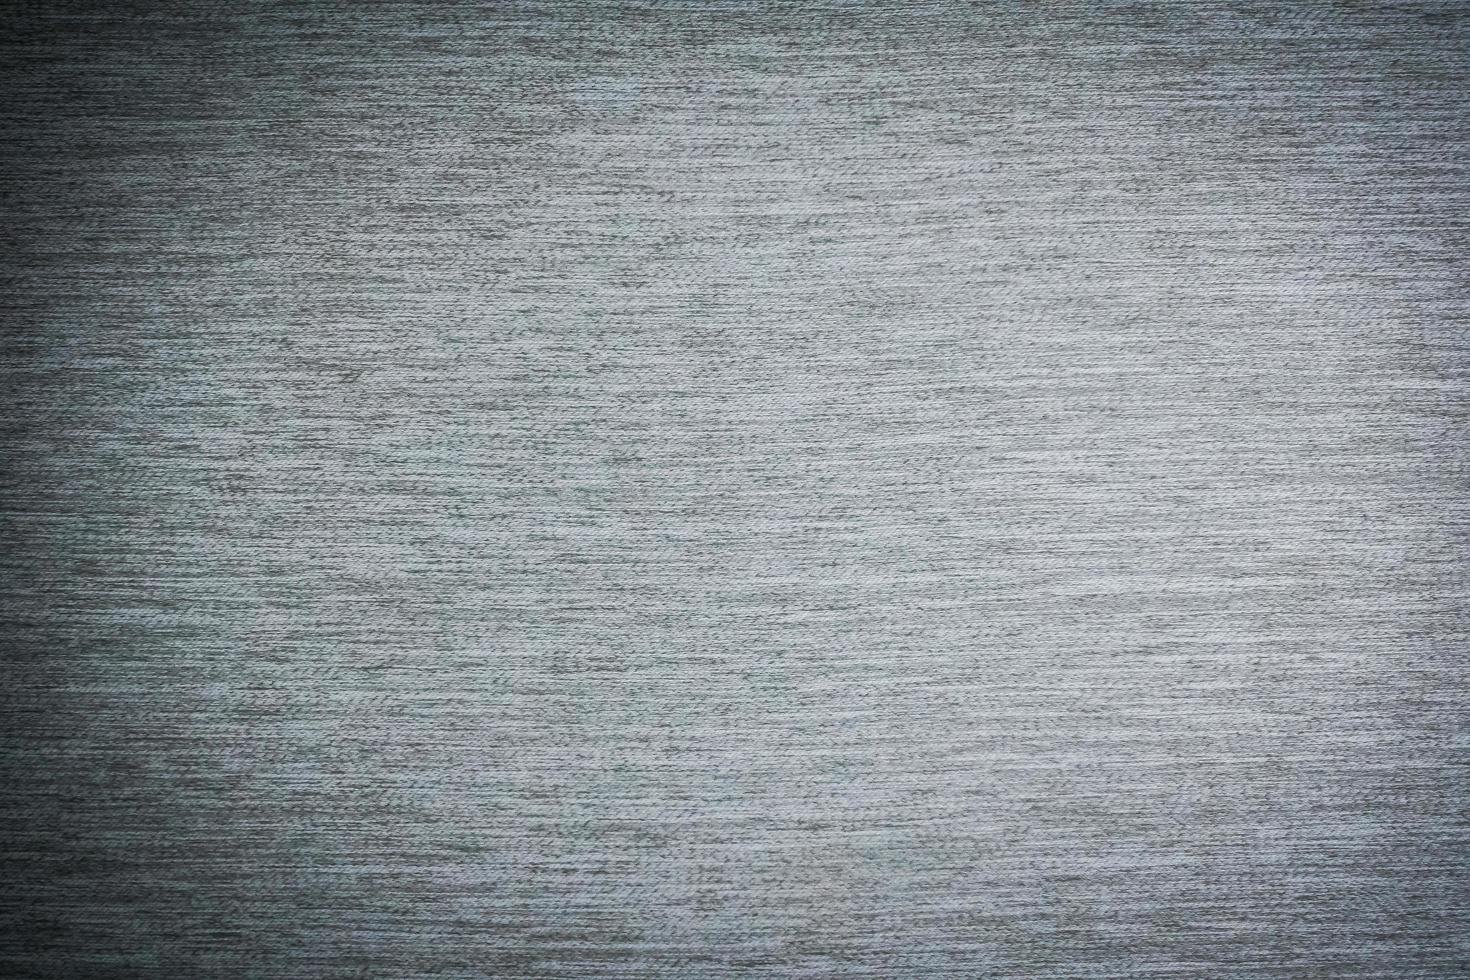 tissu gris et textures de coton photo